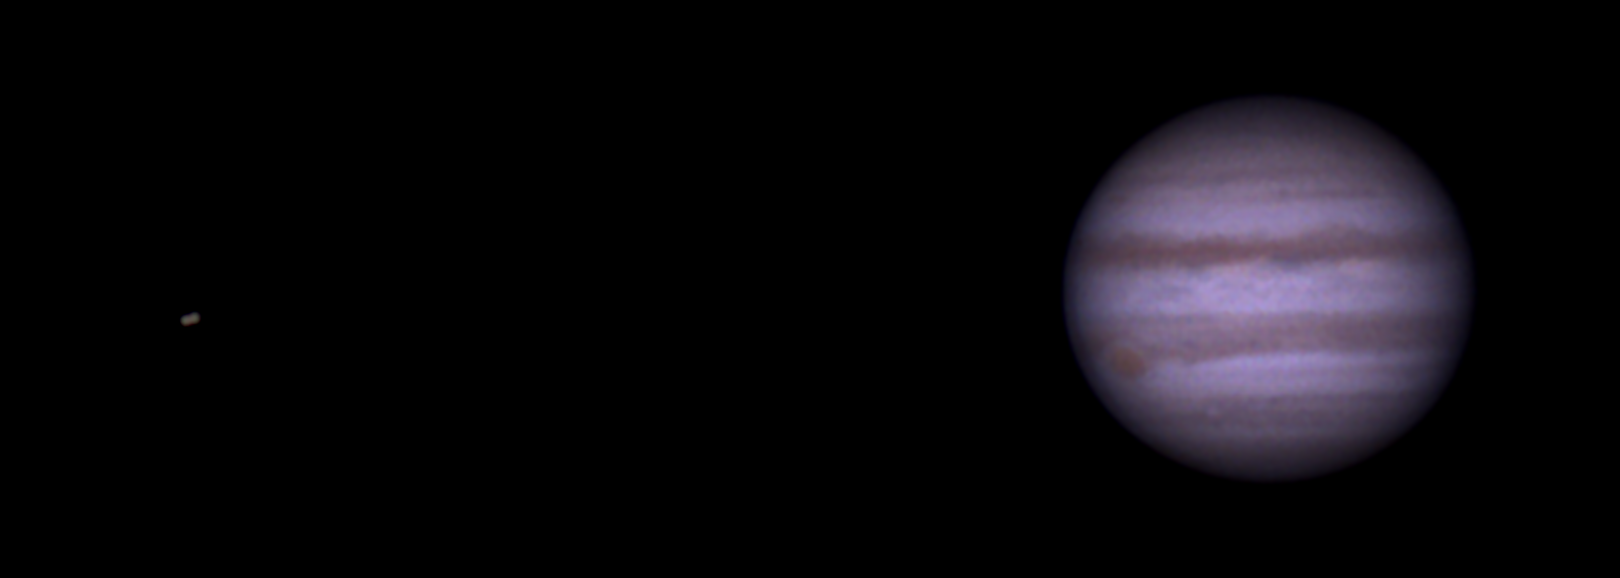 Bedeckung von Io und Europa am 11. März 2015